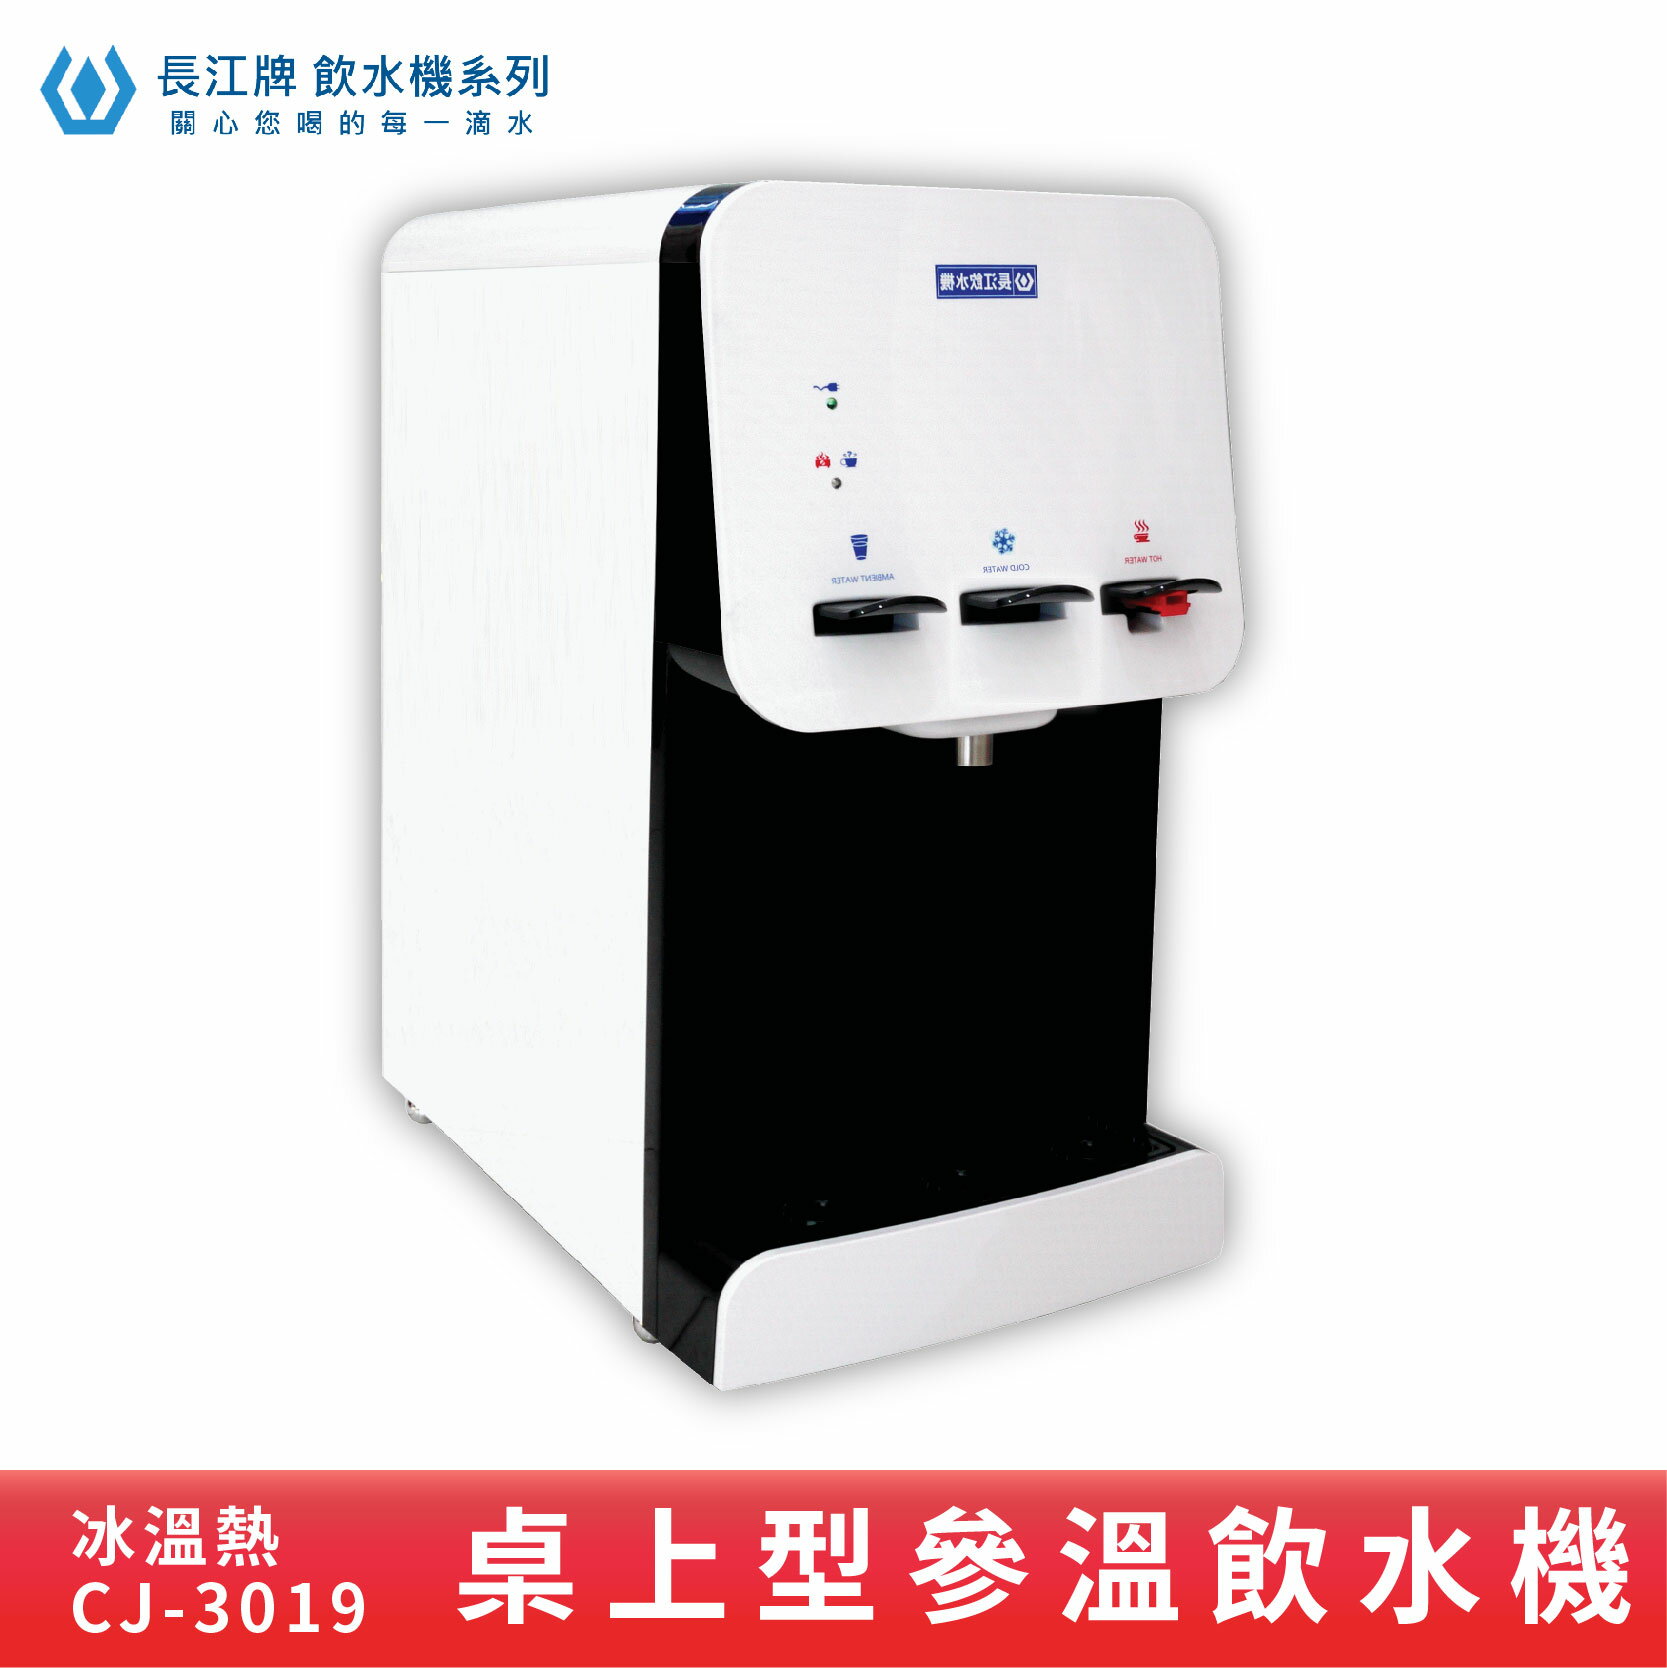 【專業好水】長江牌 CJ-3019 參溫飲水機 溫熱冰 超淨型飲水機 學校 公司 茶水間 公共設施 台灣製造